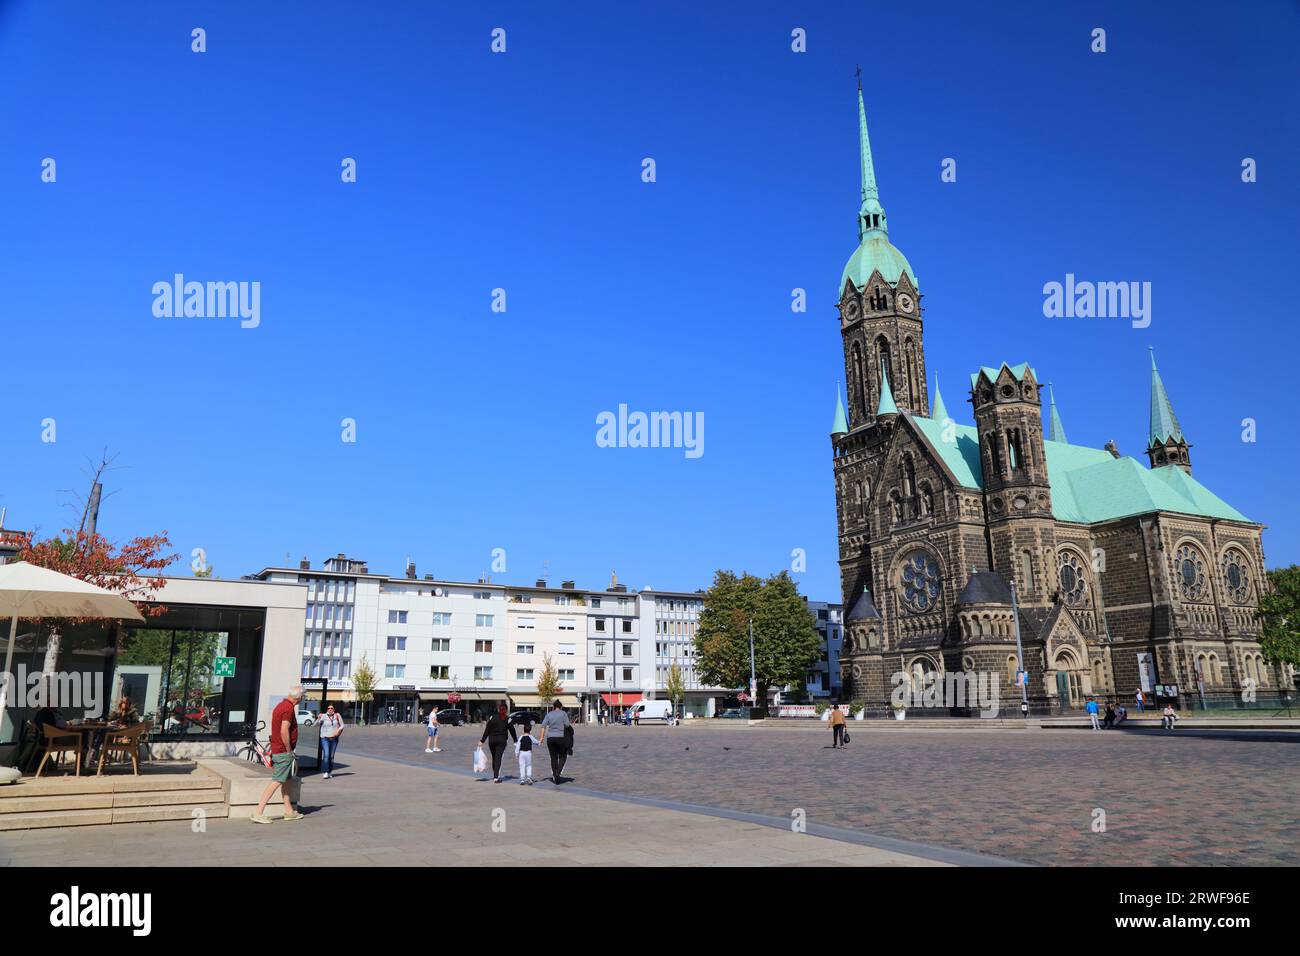 MÖNCHENGLADBACH, DEUTSCHLAND - 18. SEPTEMBER 2020: Menschen besuchen Rheydt Bezirk Mönchengladbach, eine Großstadt in Nordrhein-Westfalen Region Deutschland Stockfoto